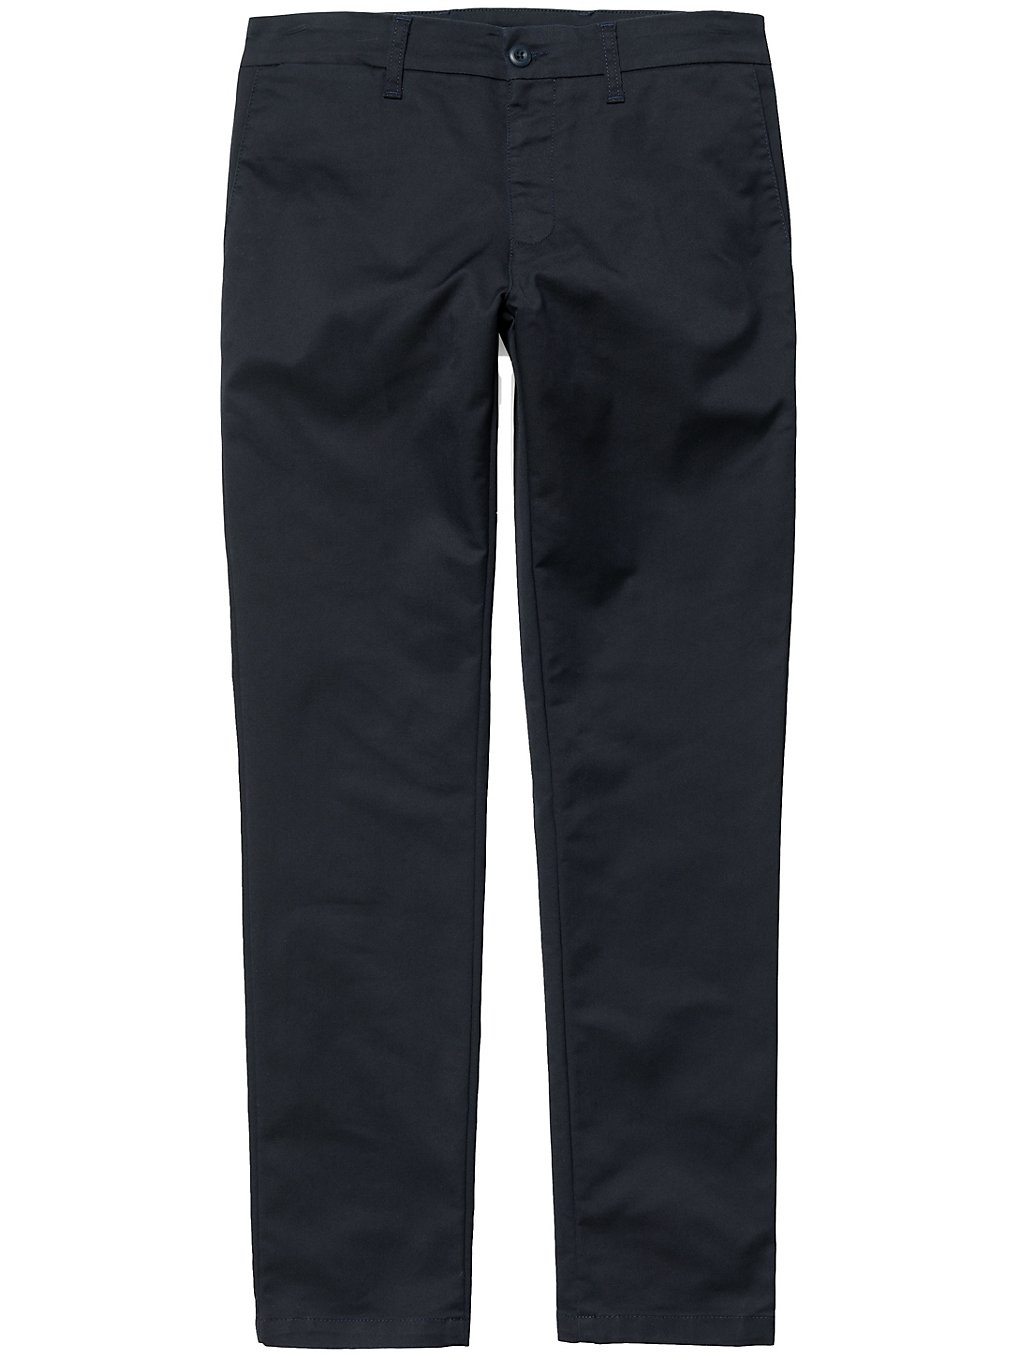 Carhartt WIP Sid Pantalones azul product